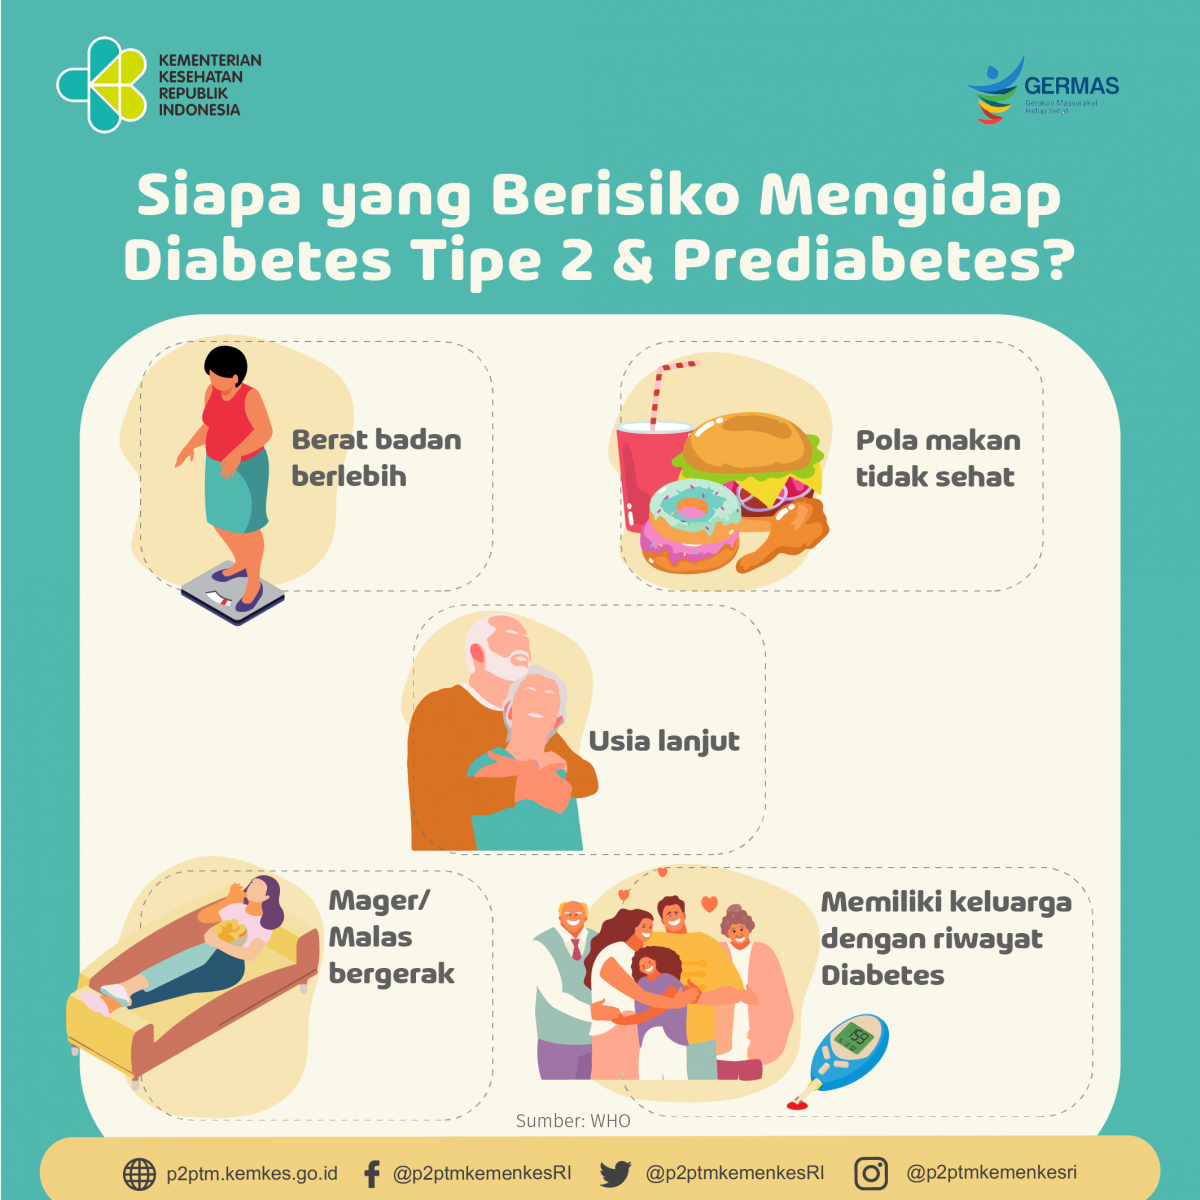  Siapa yang berisiko mengidap Diabetes Tipe 2 dan Prediabetes?